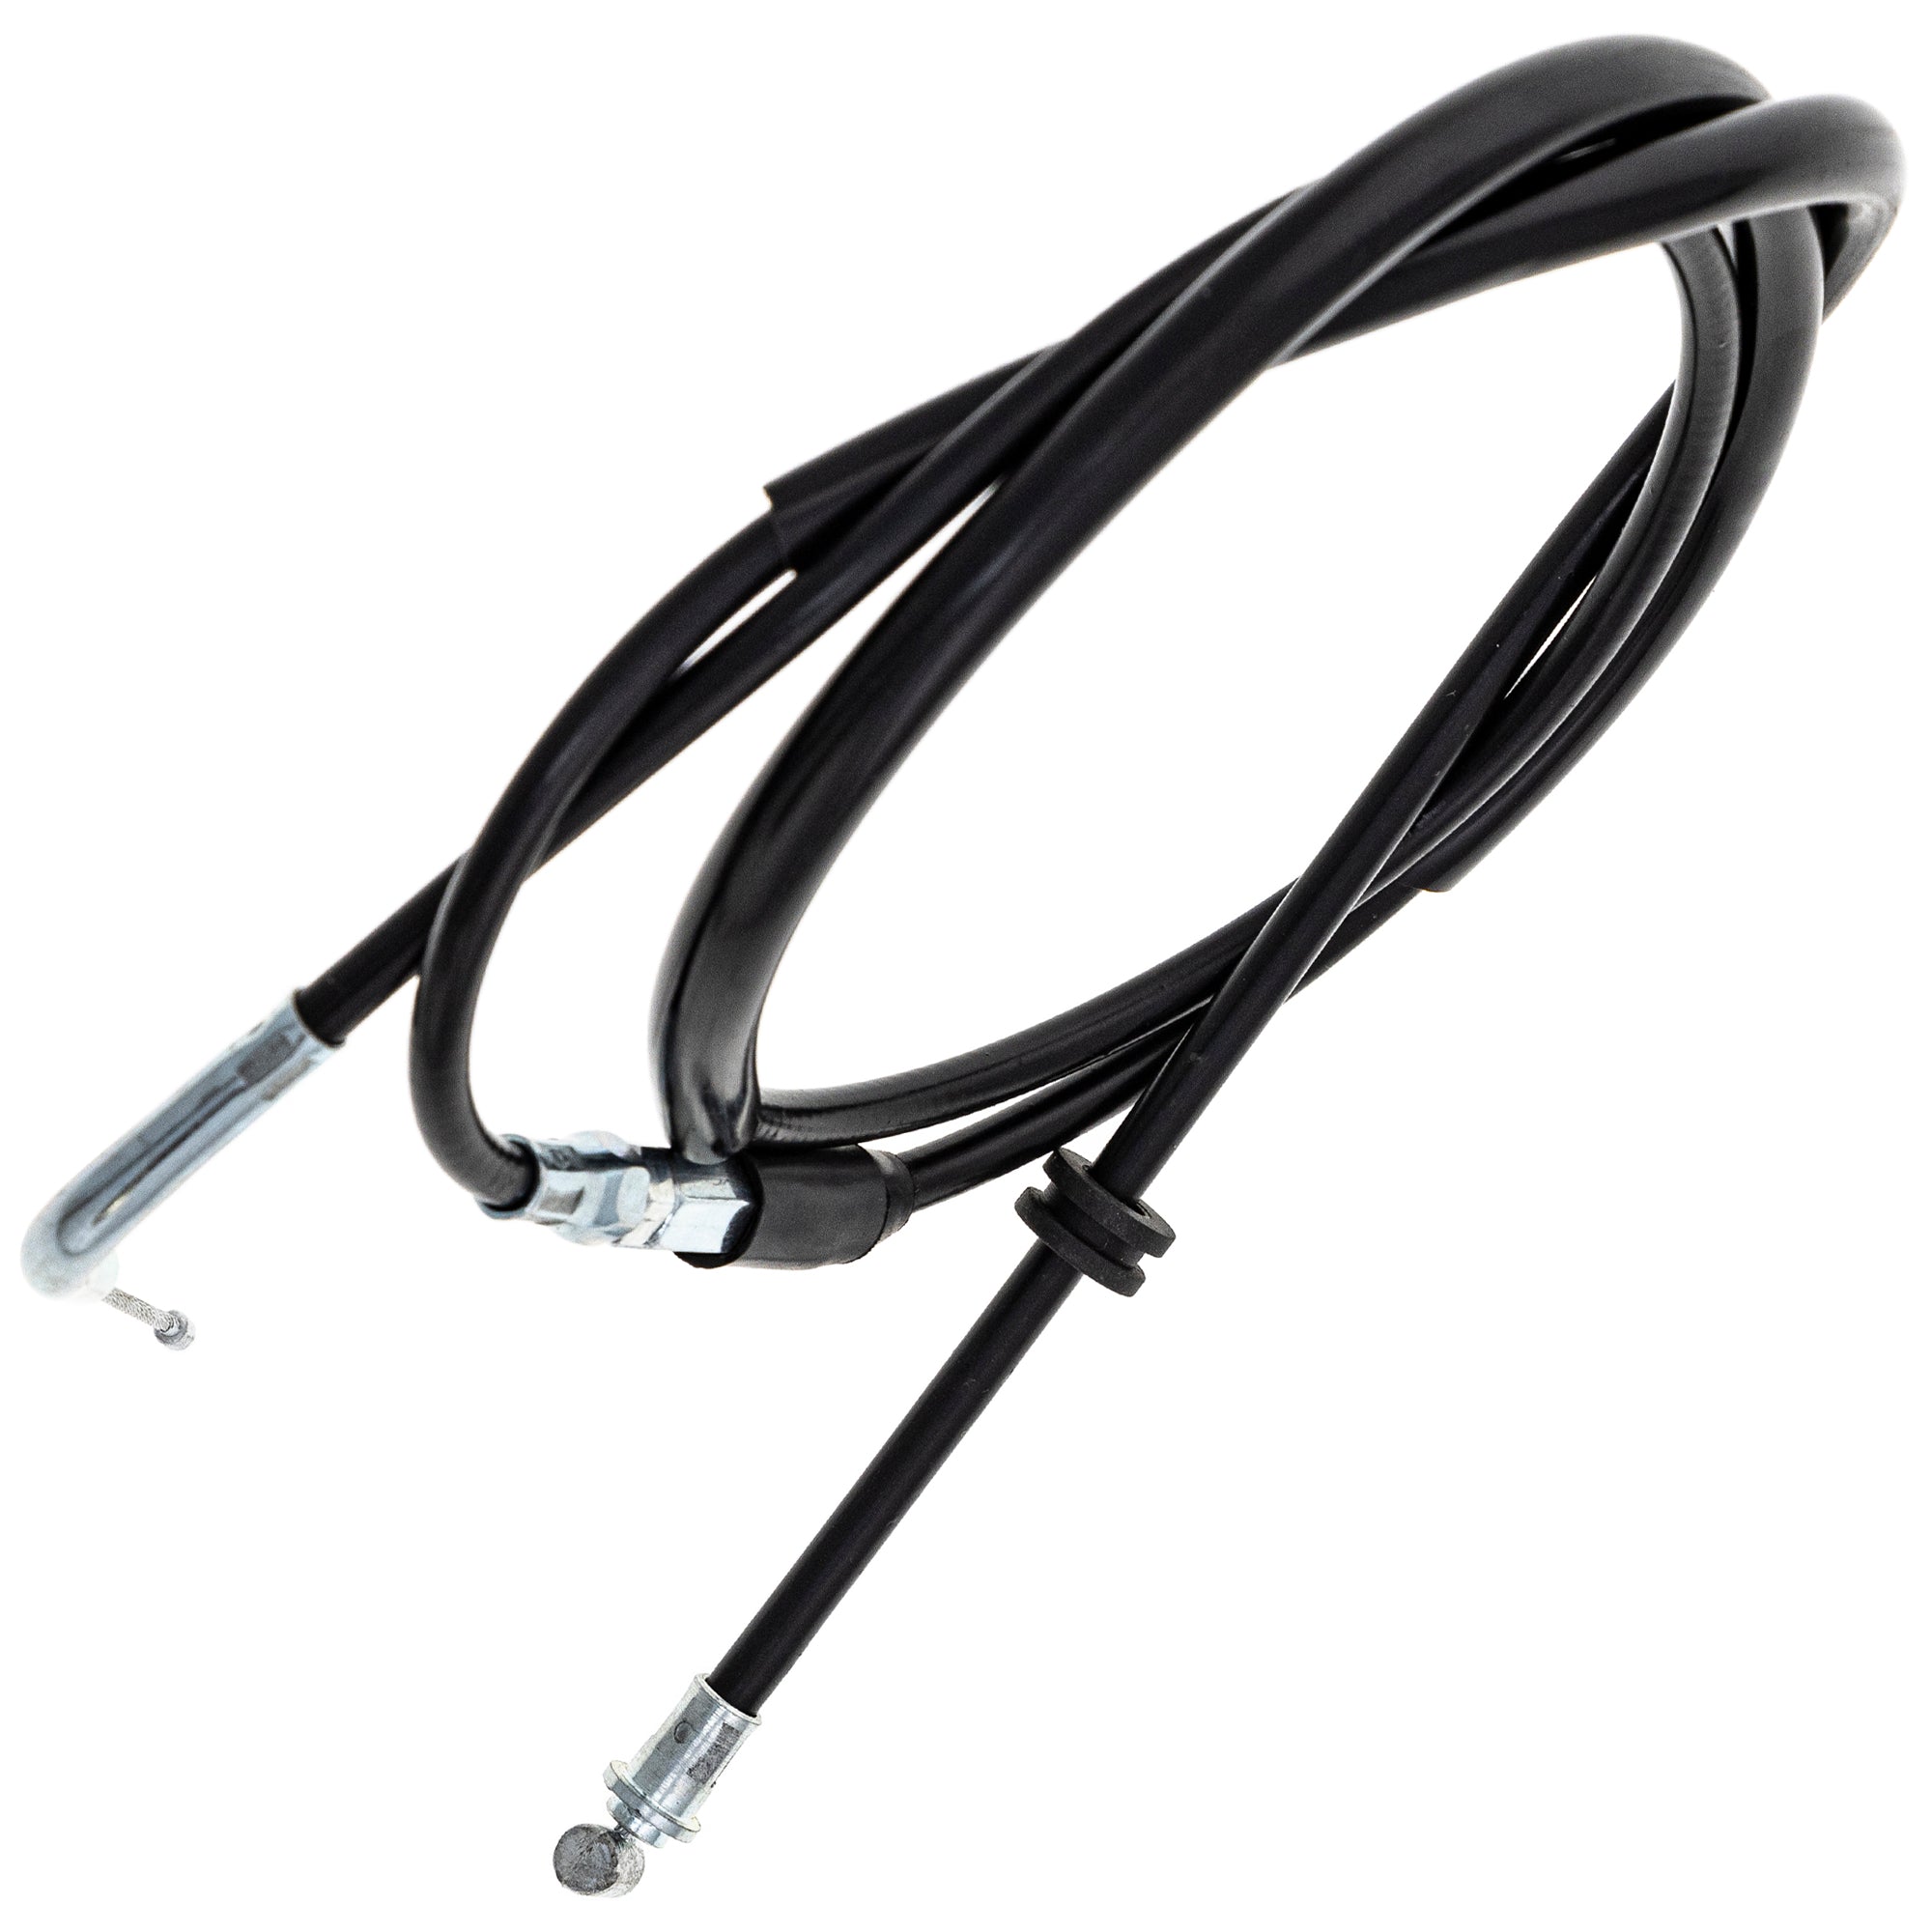 Throttle Cable for Suzuki LT230E Quadrunner LT250 58300-35B01